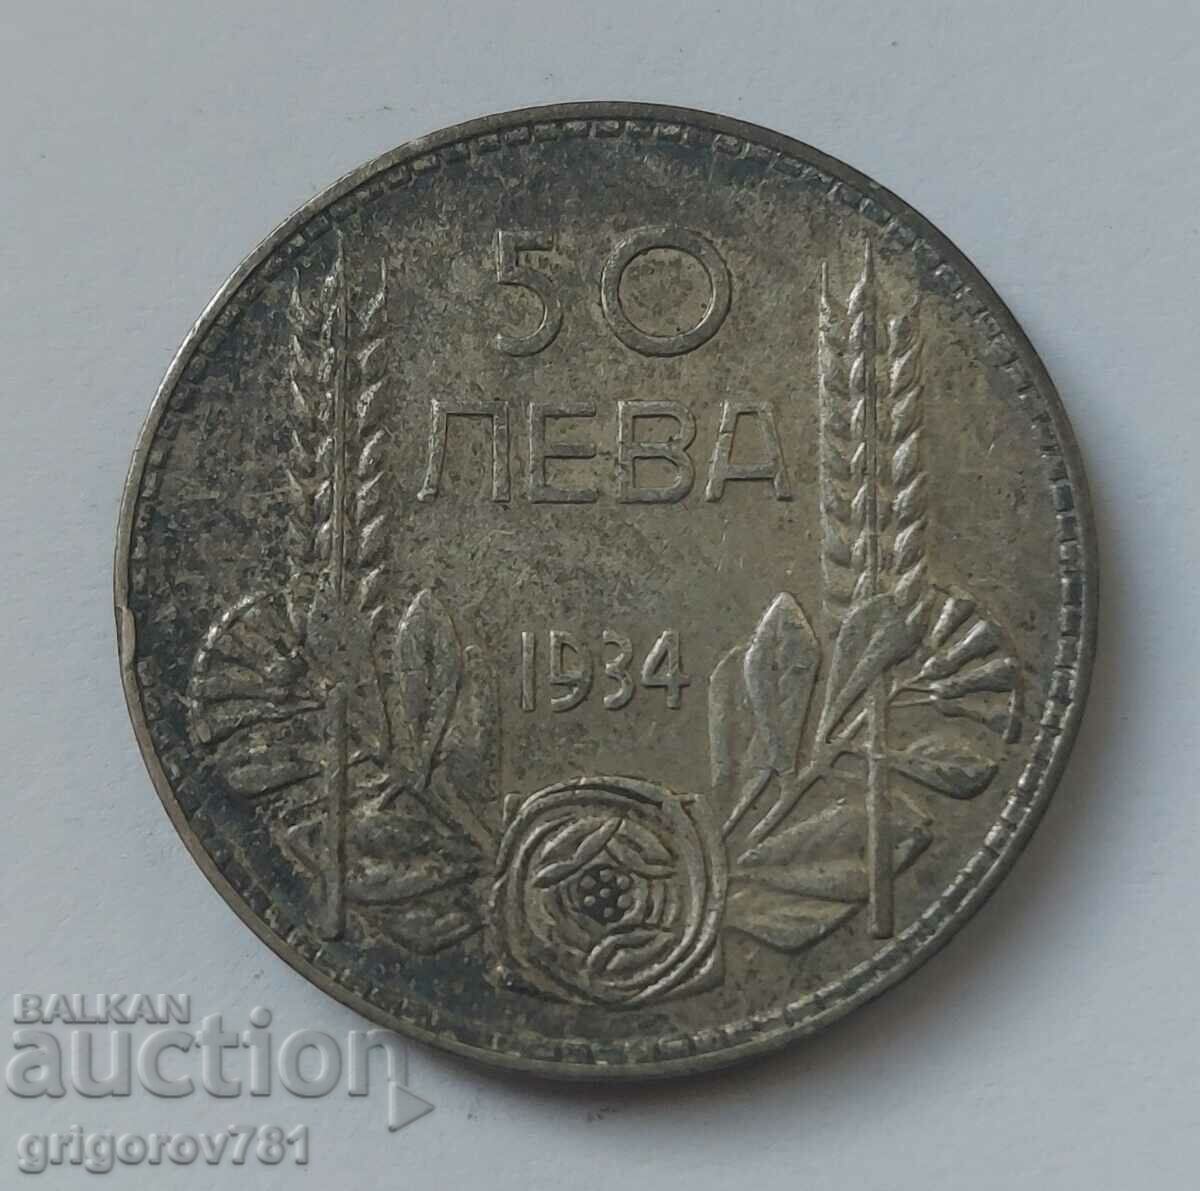 50 leva argint Bulgaria 1934 - monedă de argint #26